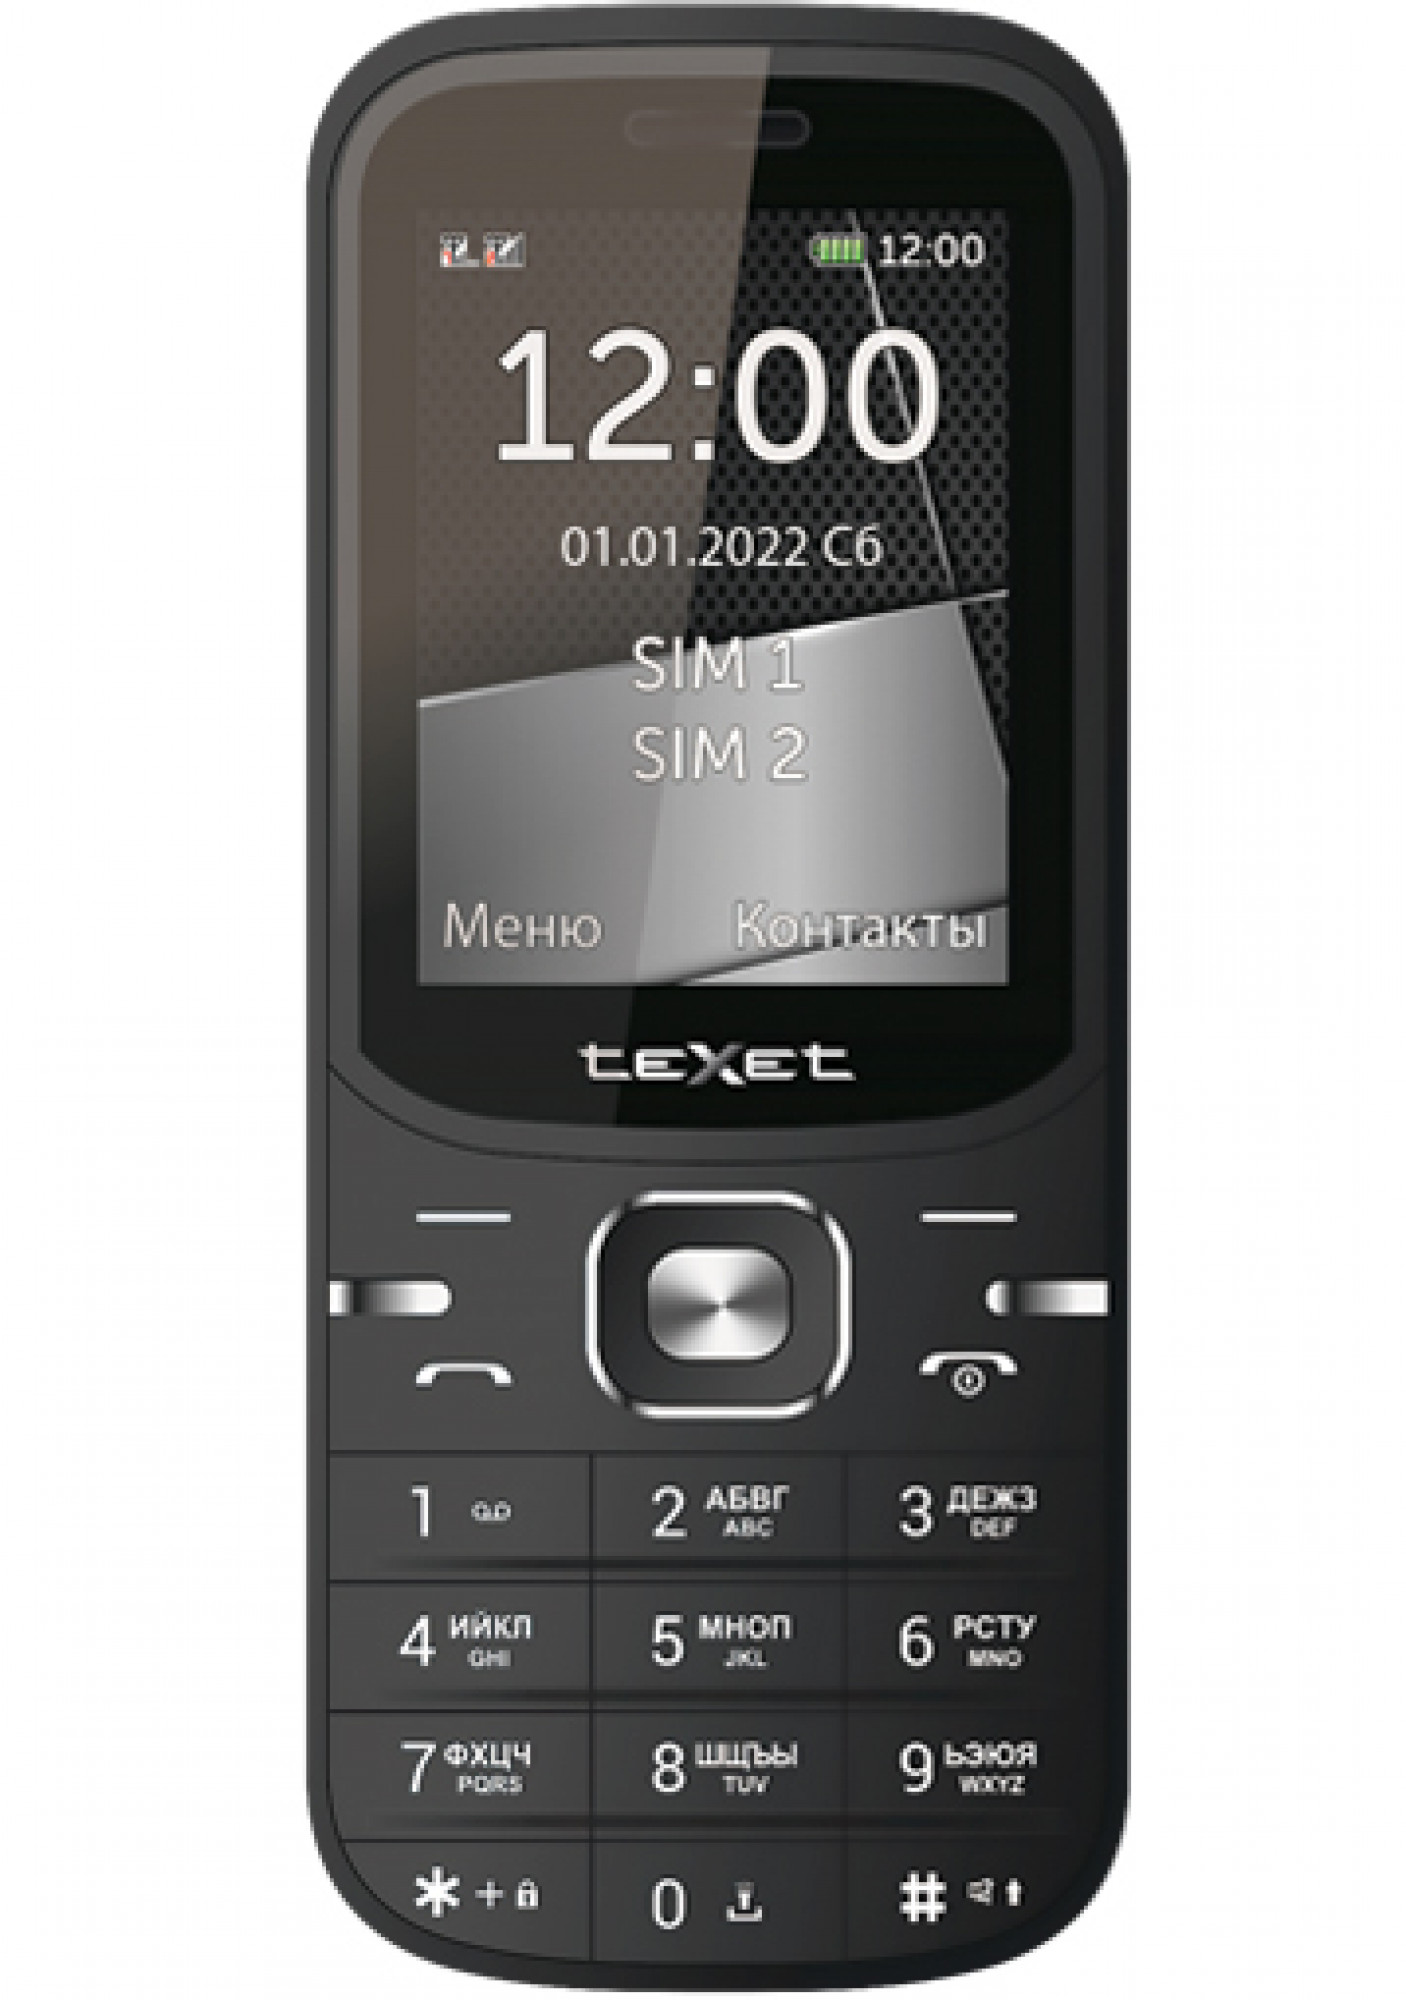   Мобильный телефон TeXet TM-219 черный